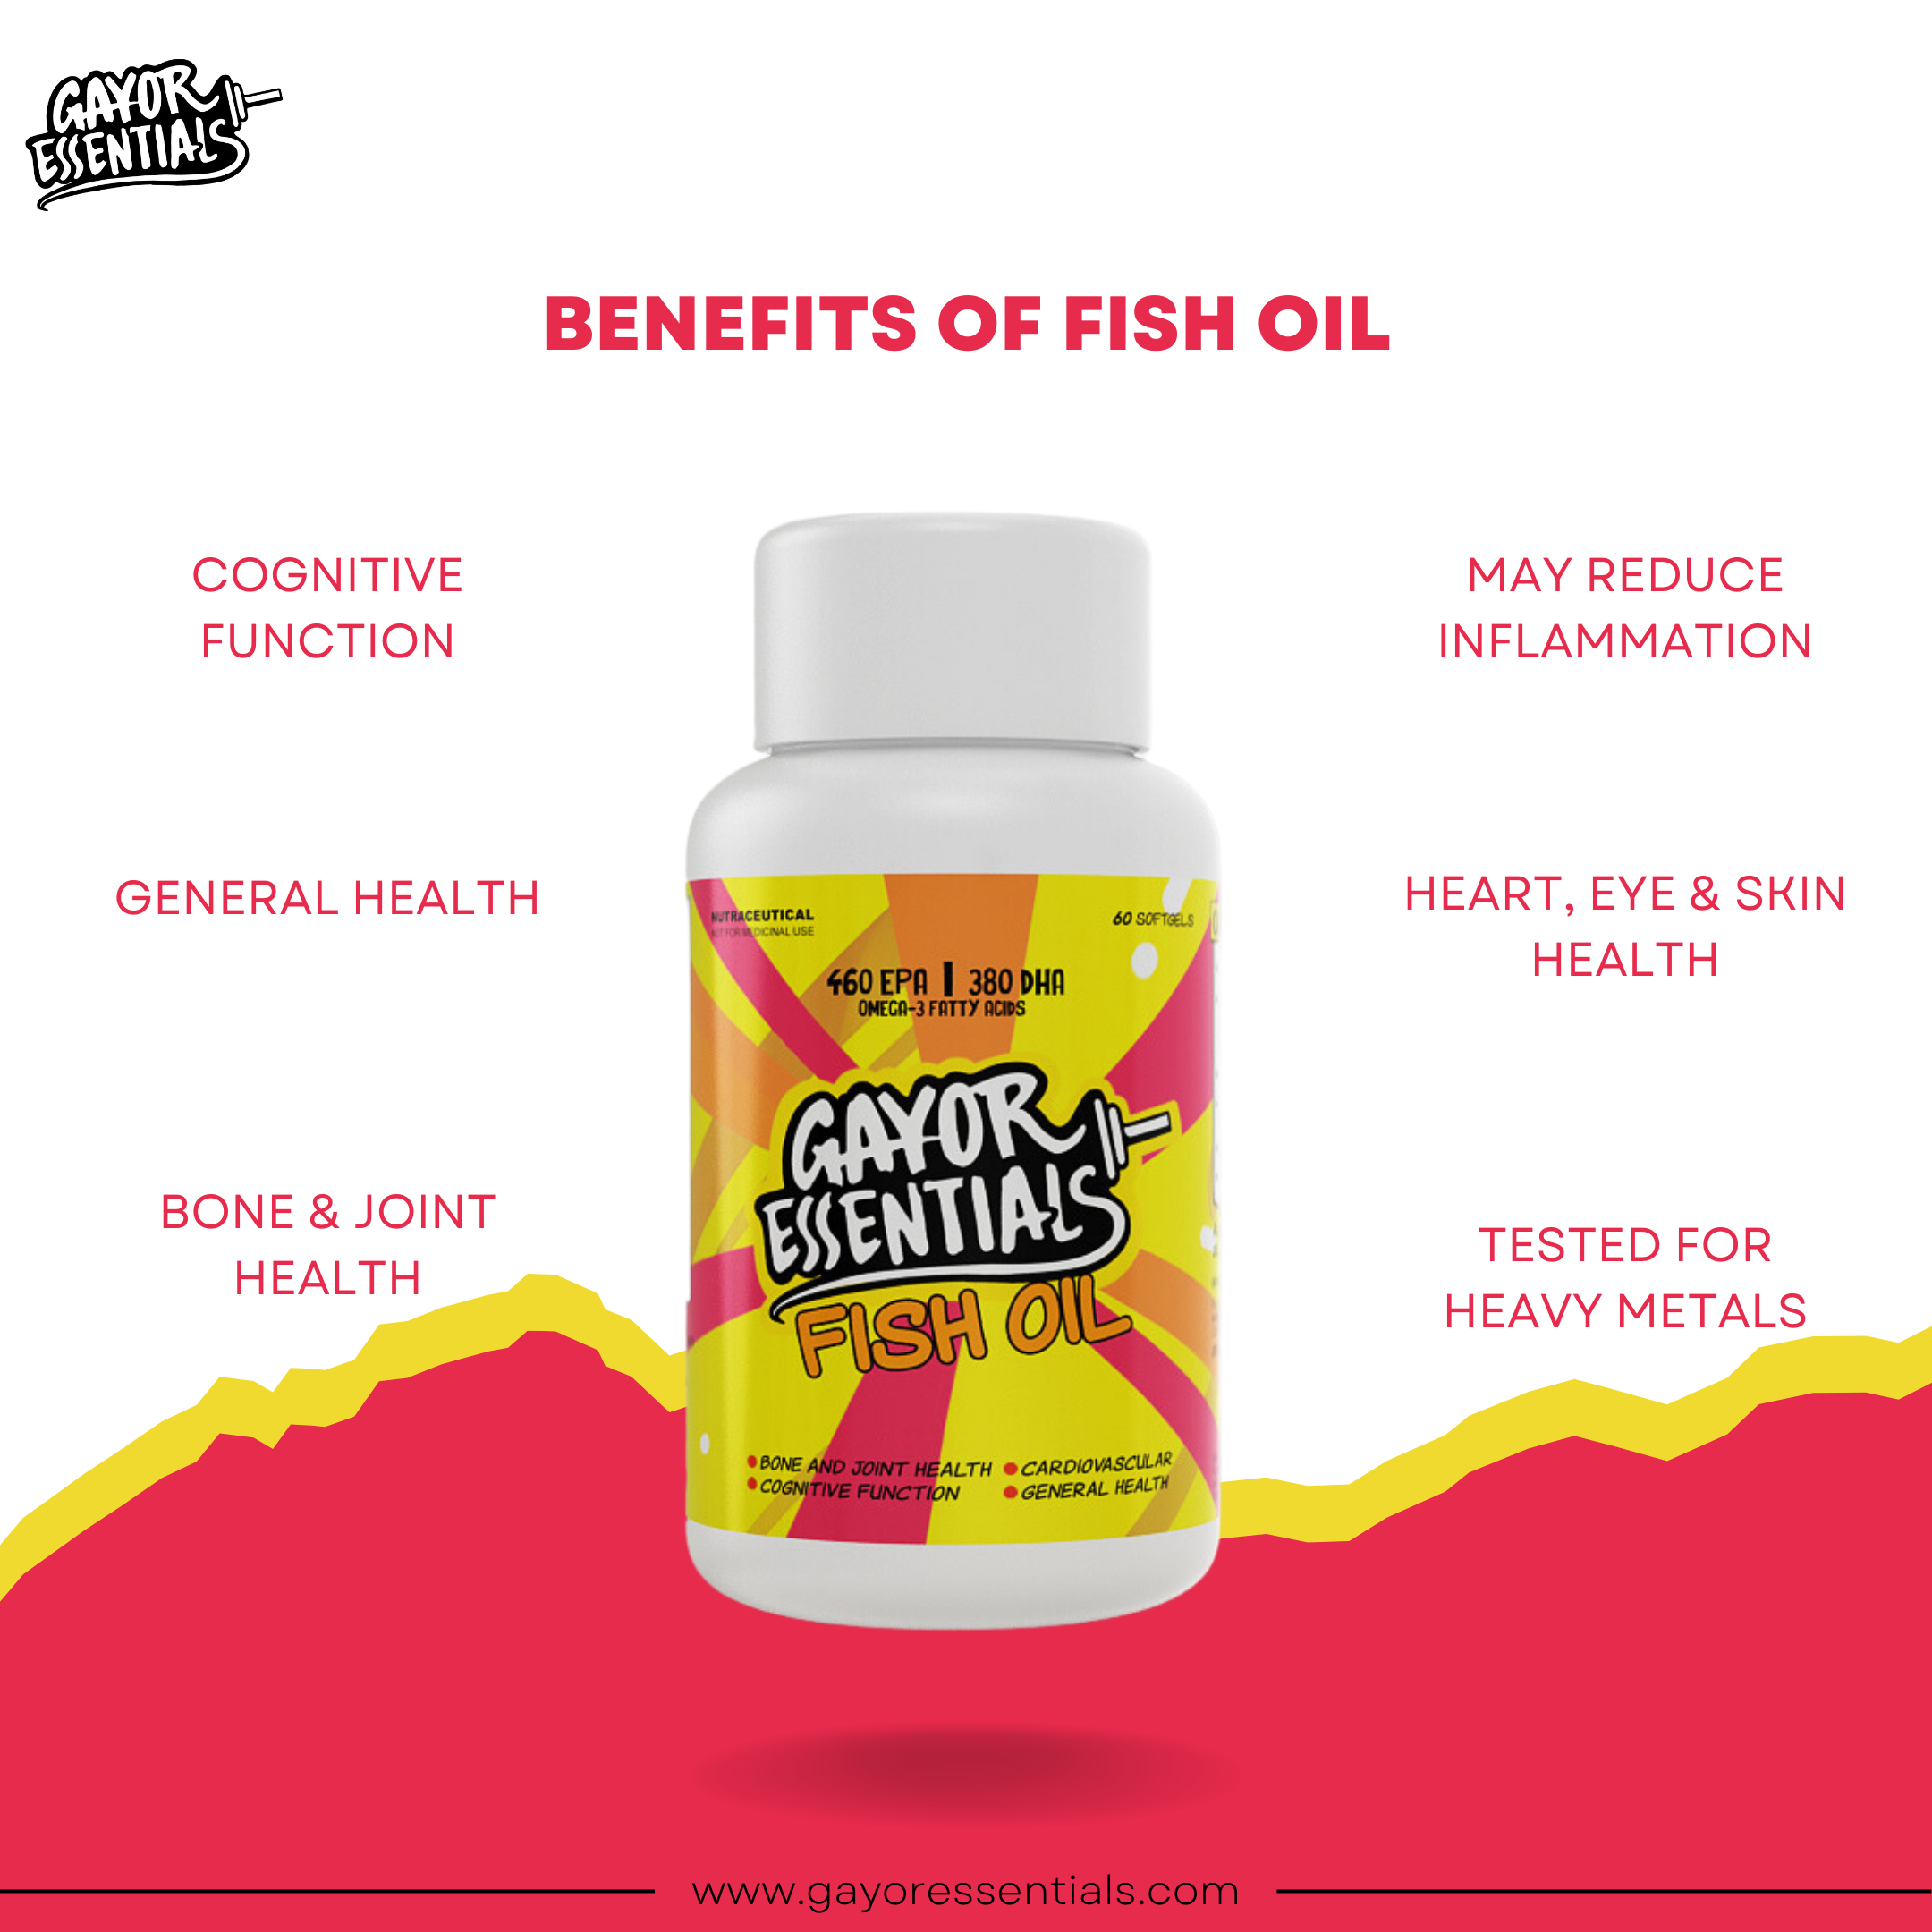 Fish Oil - Omega 3 Fatty Acids